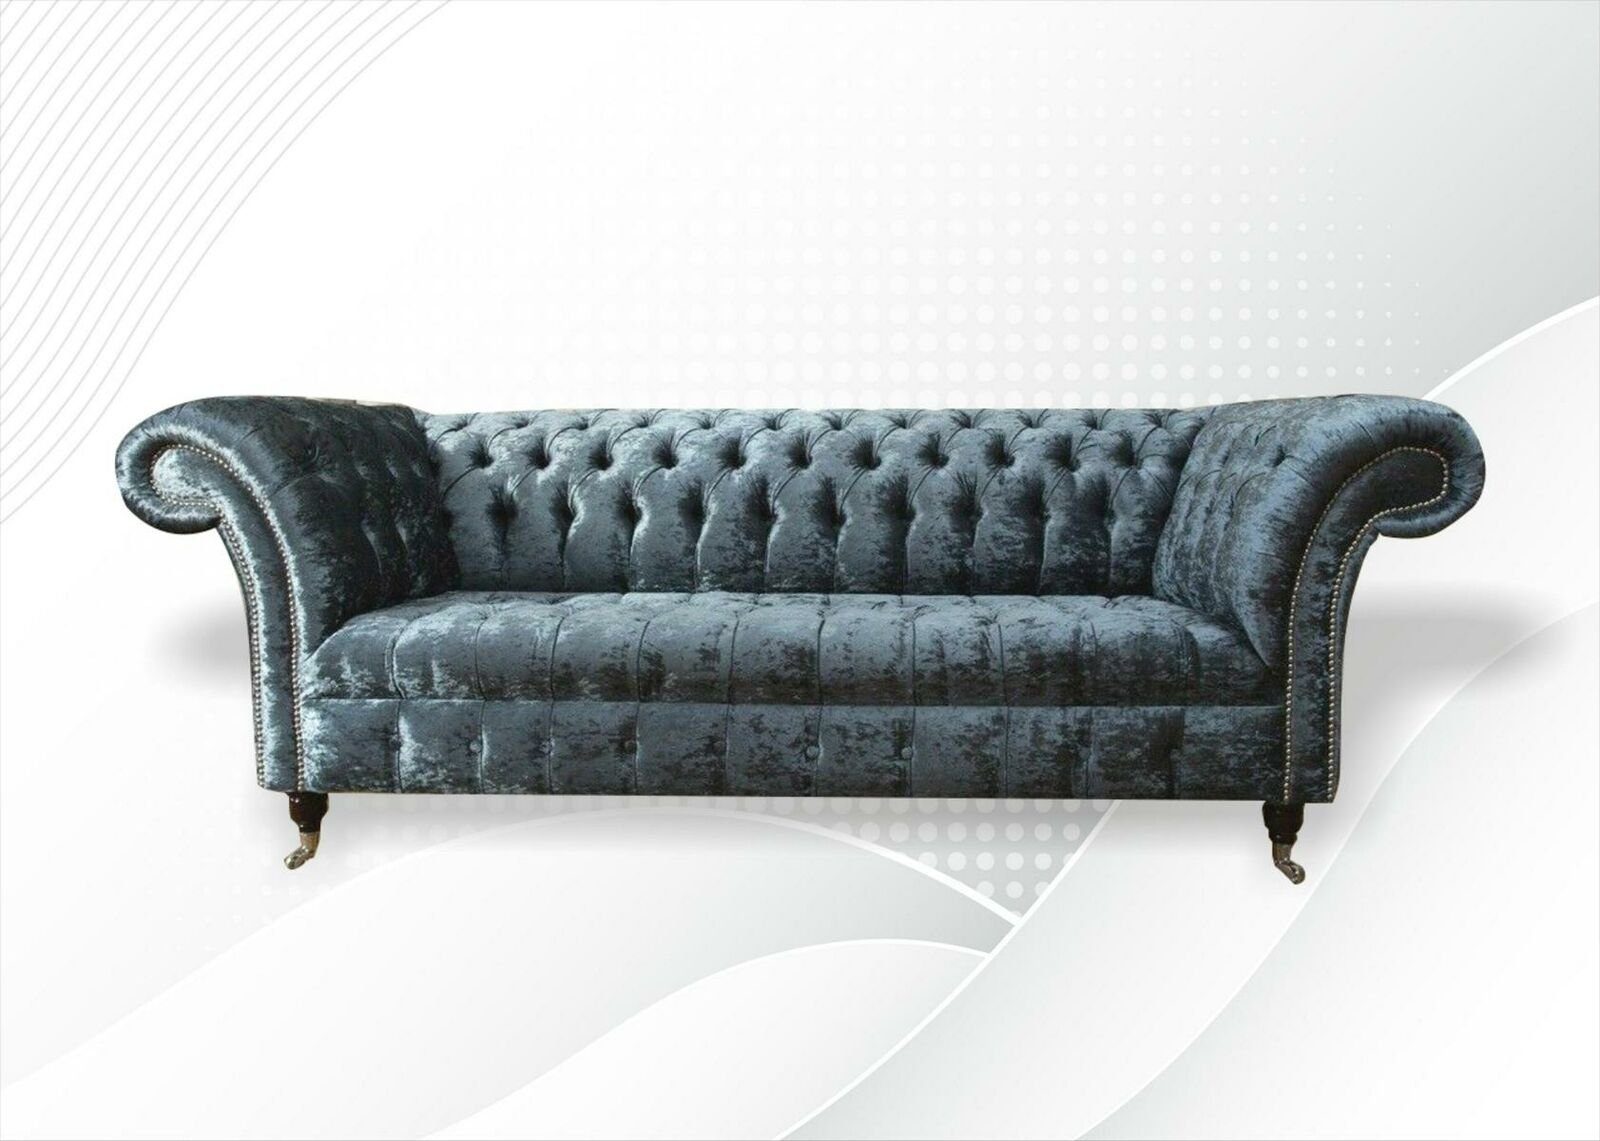 xxl Sofa Couchen Möbel Chesterfield-Sofa, sofas Grau Stoff Wohnzimmer Chesterfield Design Moderne JVmoebel